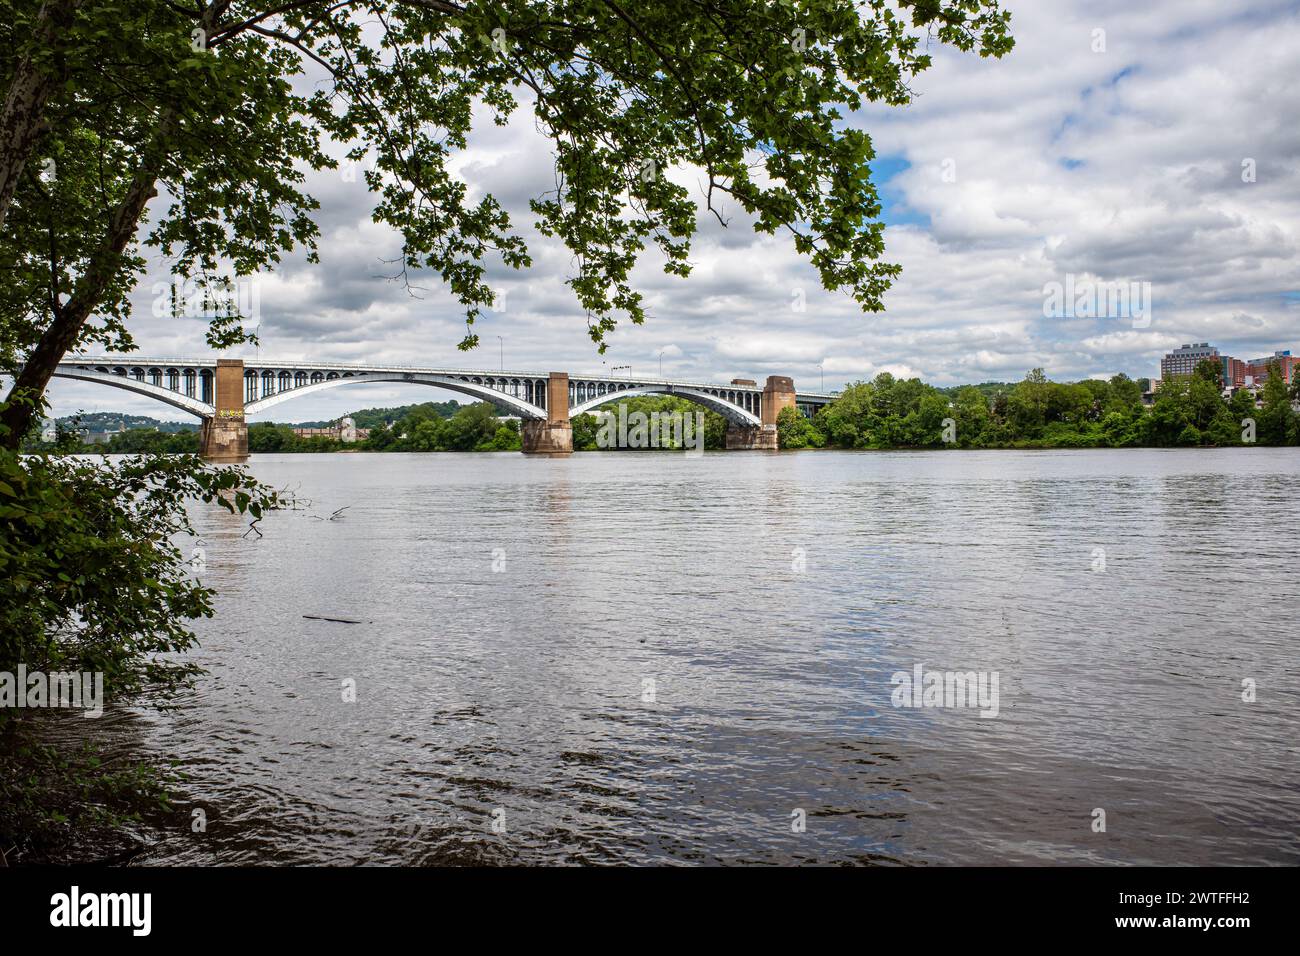 Il pittoresco 40th St Bridge attraversa graziosamente il fiume Allegheny a Pittsburgh, incorniciato da vibranti alberi verdi. Foto Stock